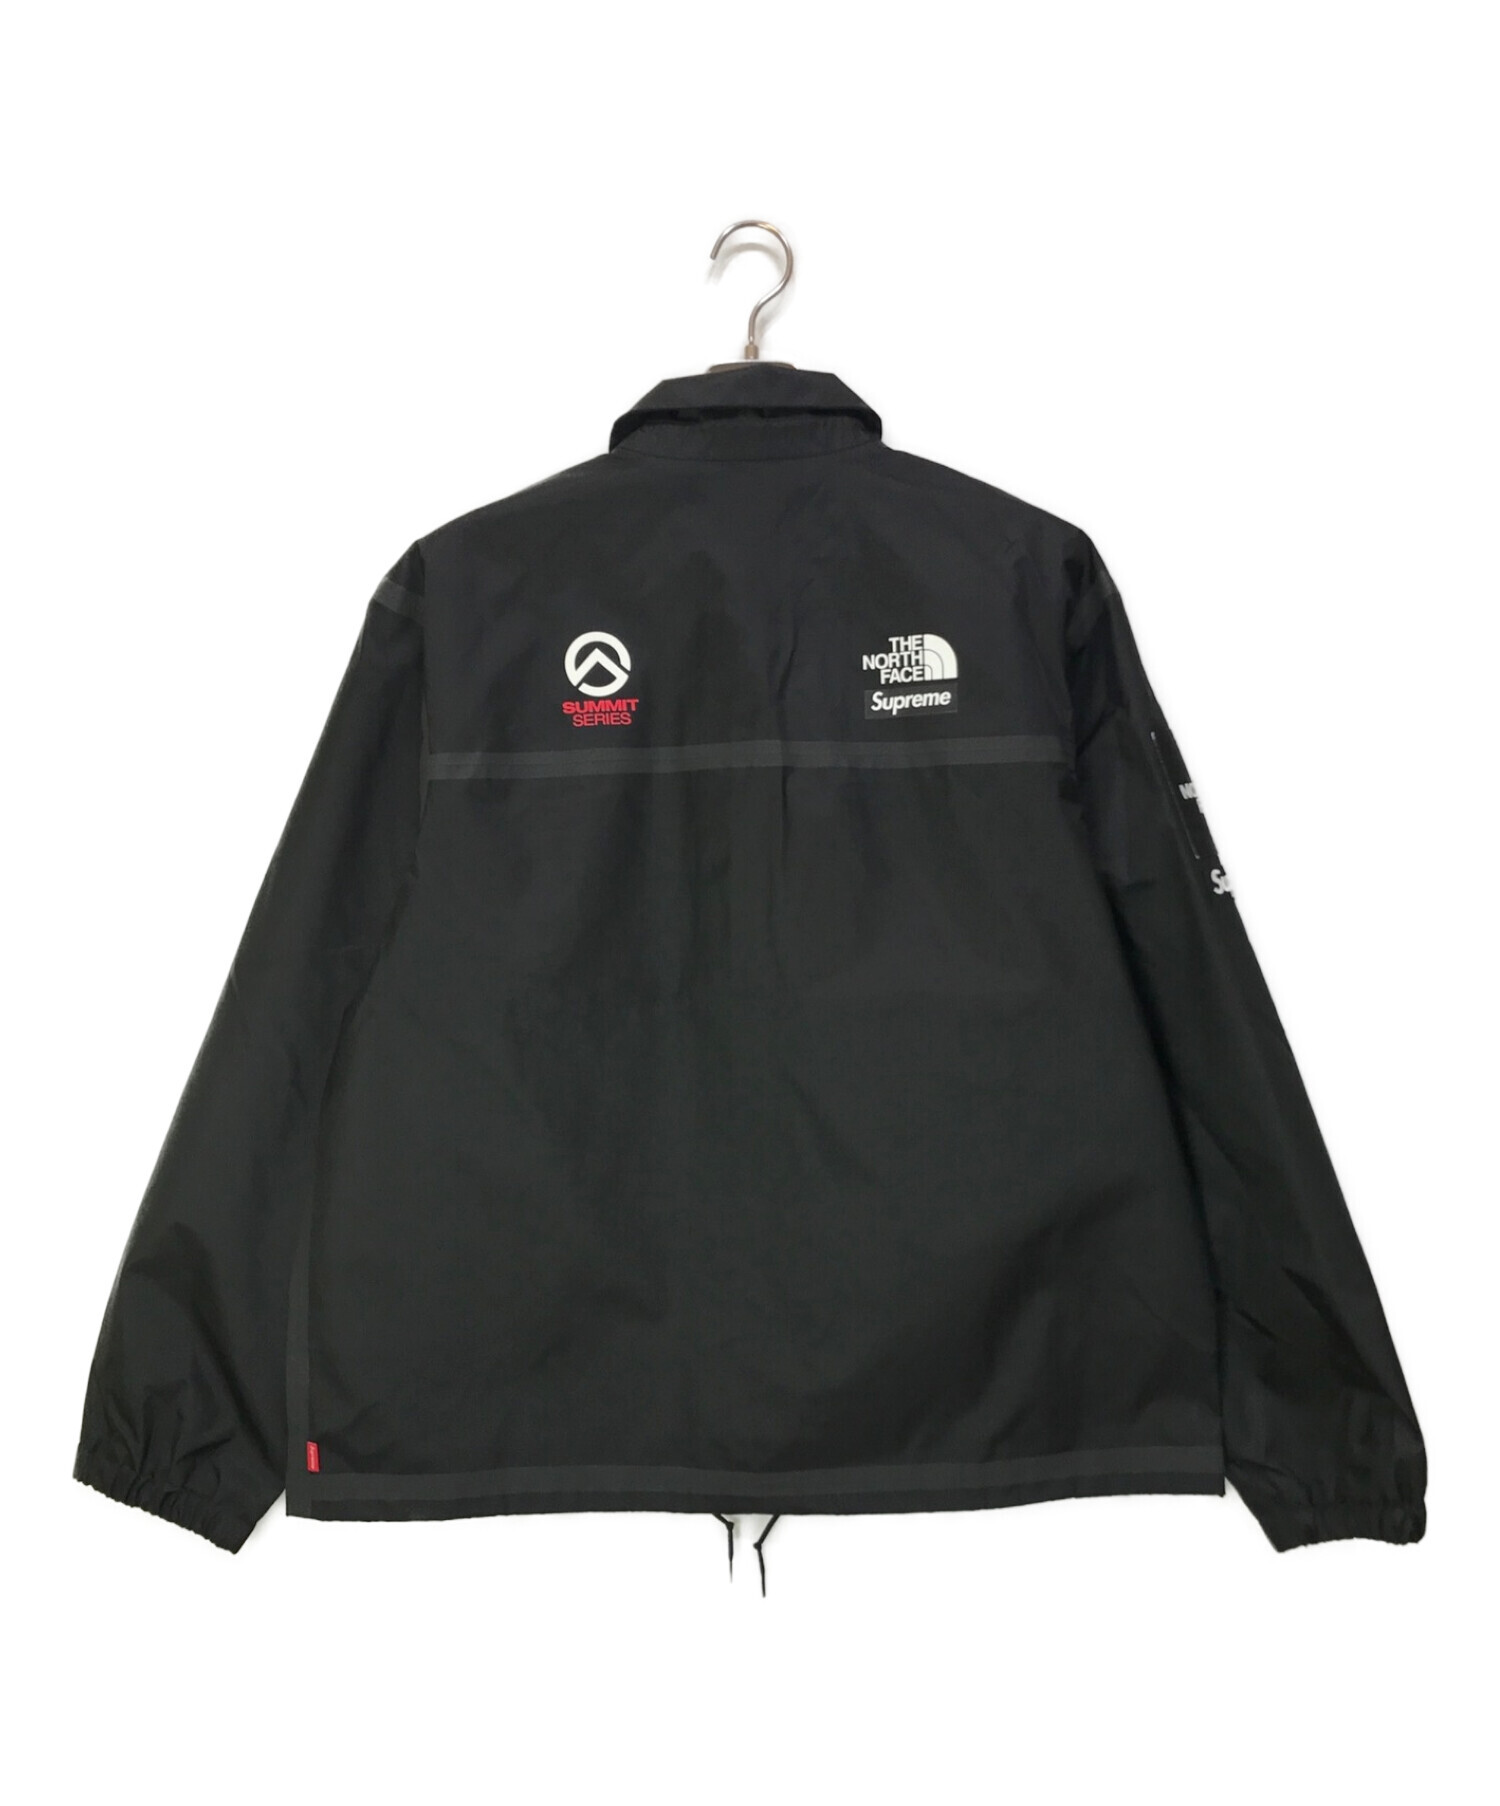 SUPREME (シュプリーム) THE NORTH FACE (ザ ノース フェイス) Tape Seam Coaches Jacket ブラック  サイズ:L